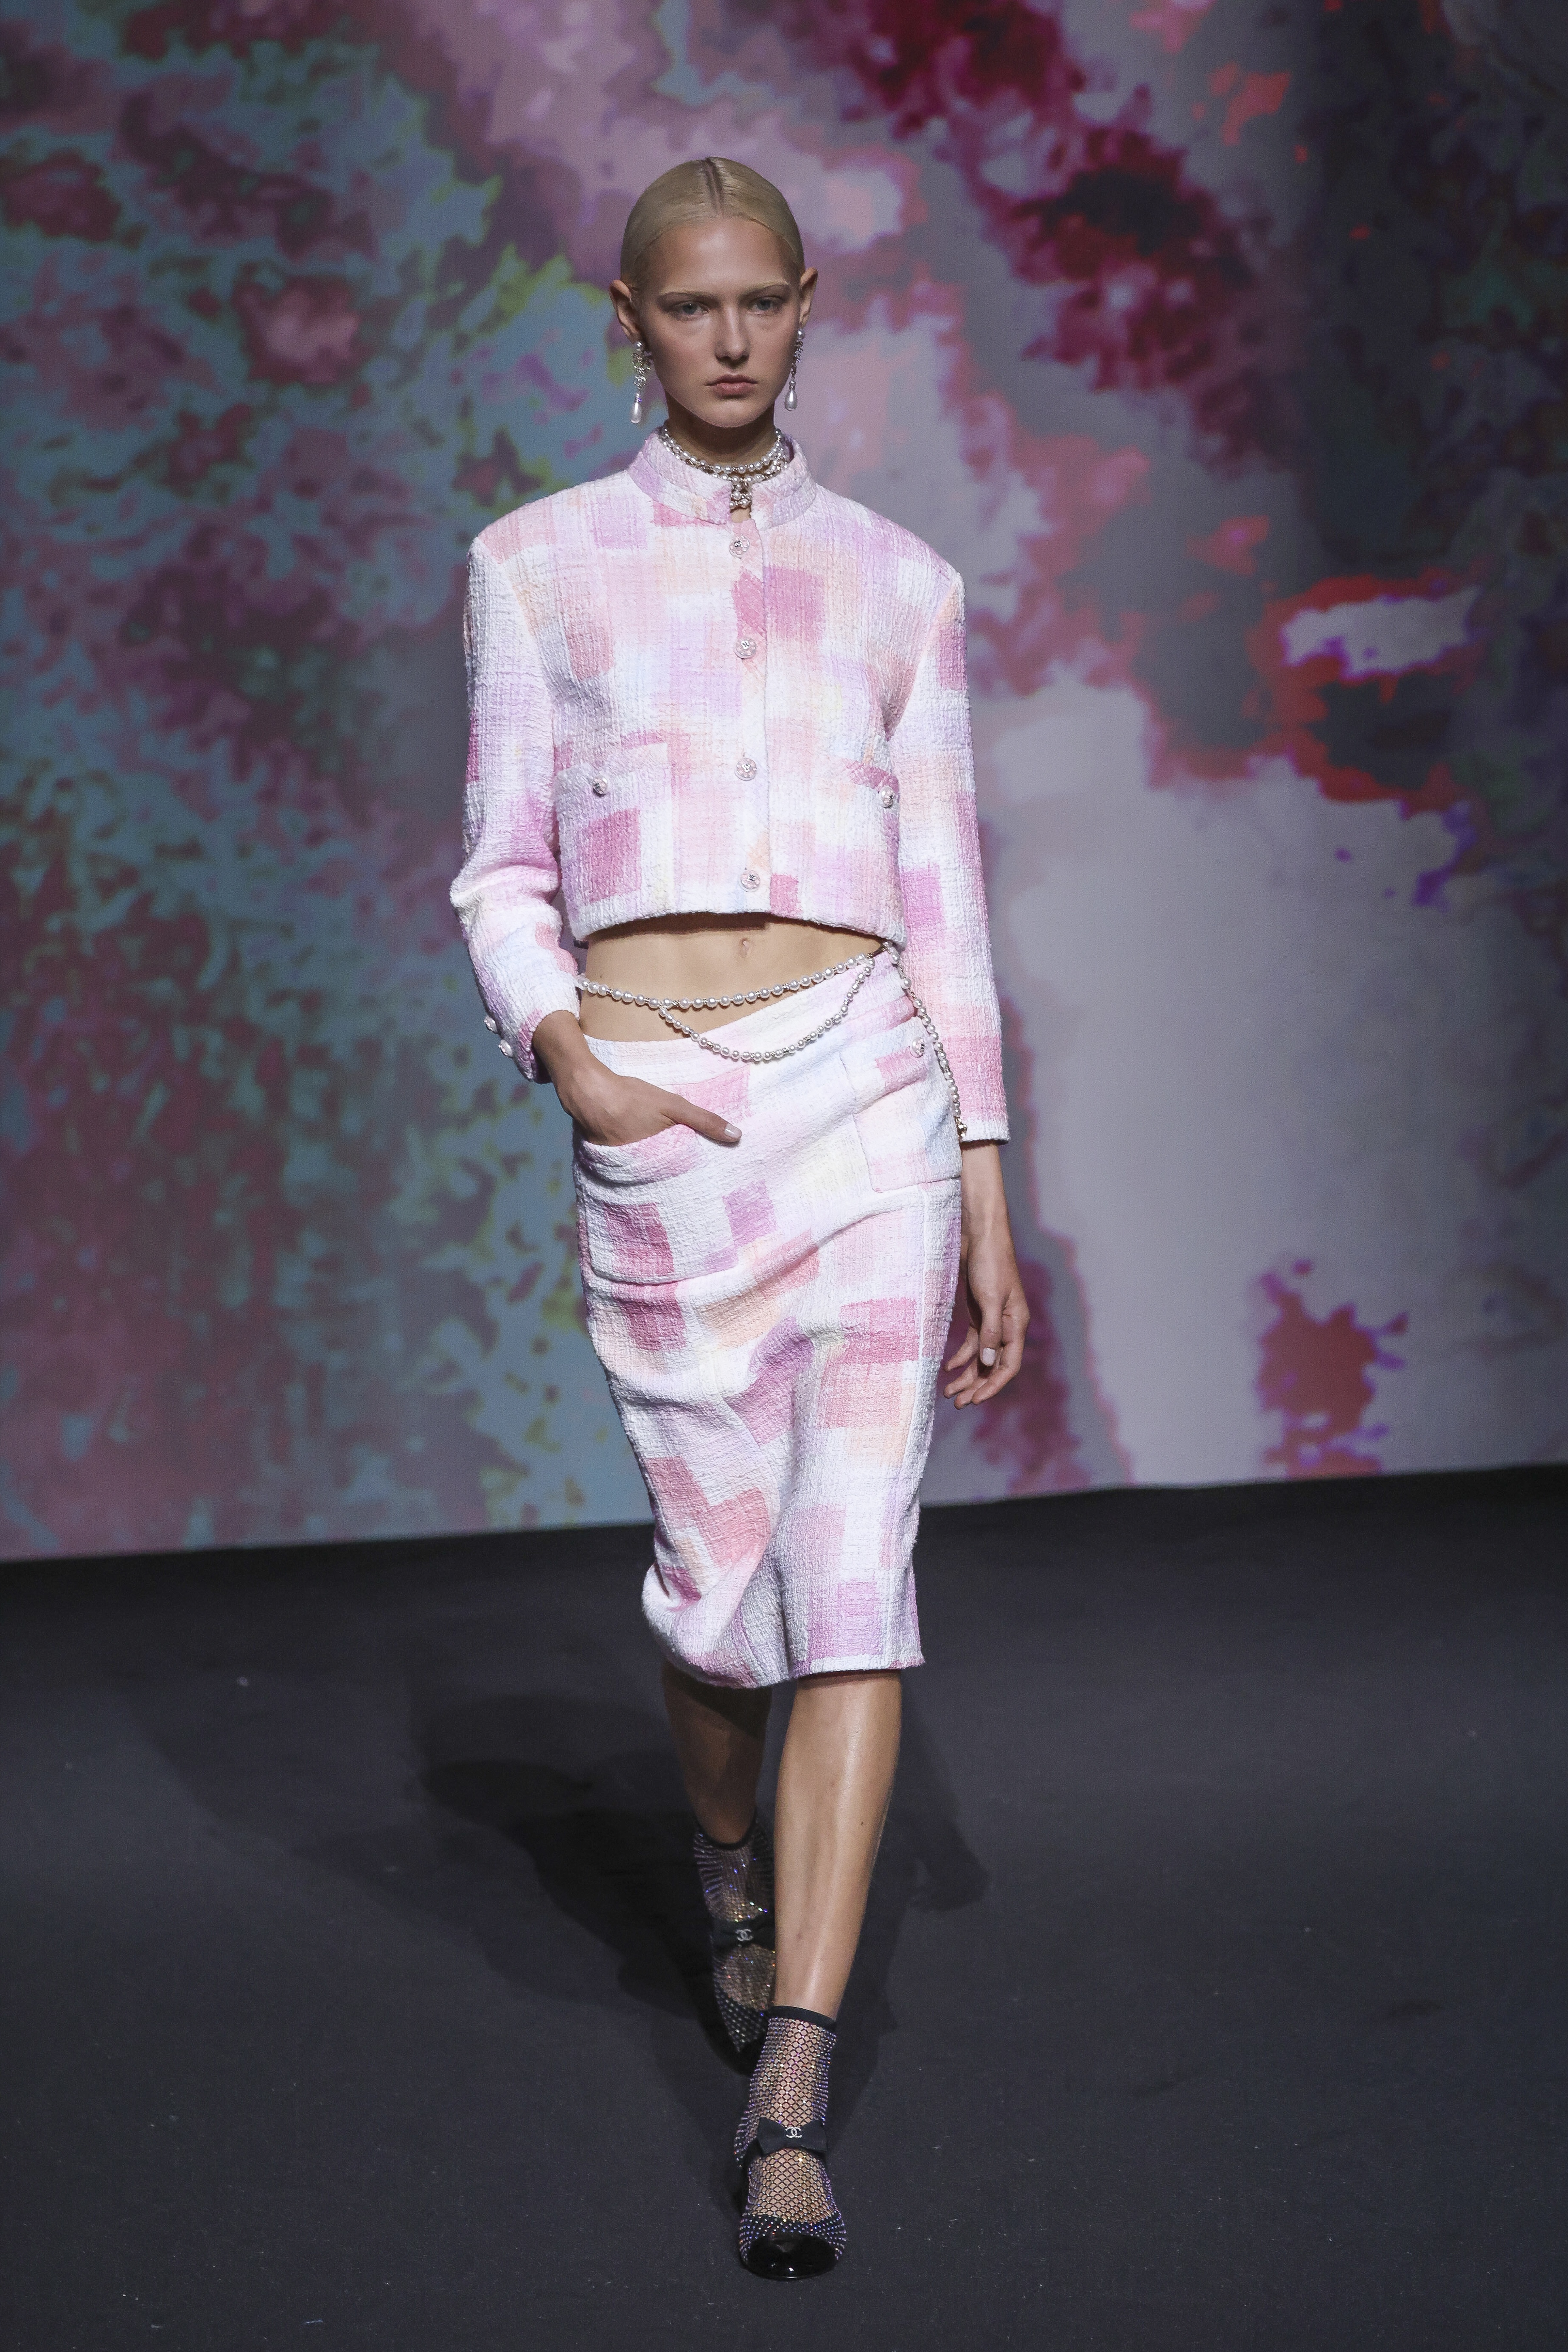 Kreation aus der Frühjahr/Sommer 2023 - Ready-To-Wear-Kollektion von Chanel bei der Pariser Fashion Week